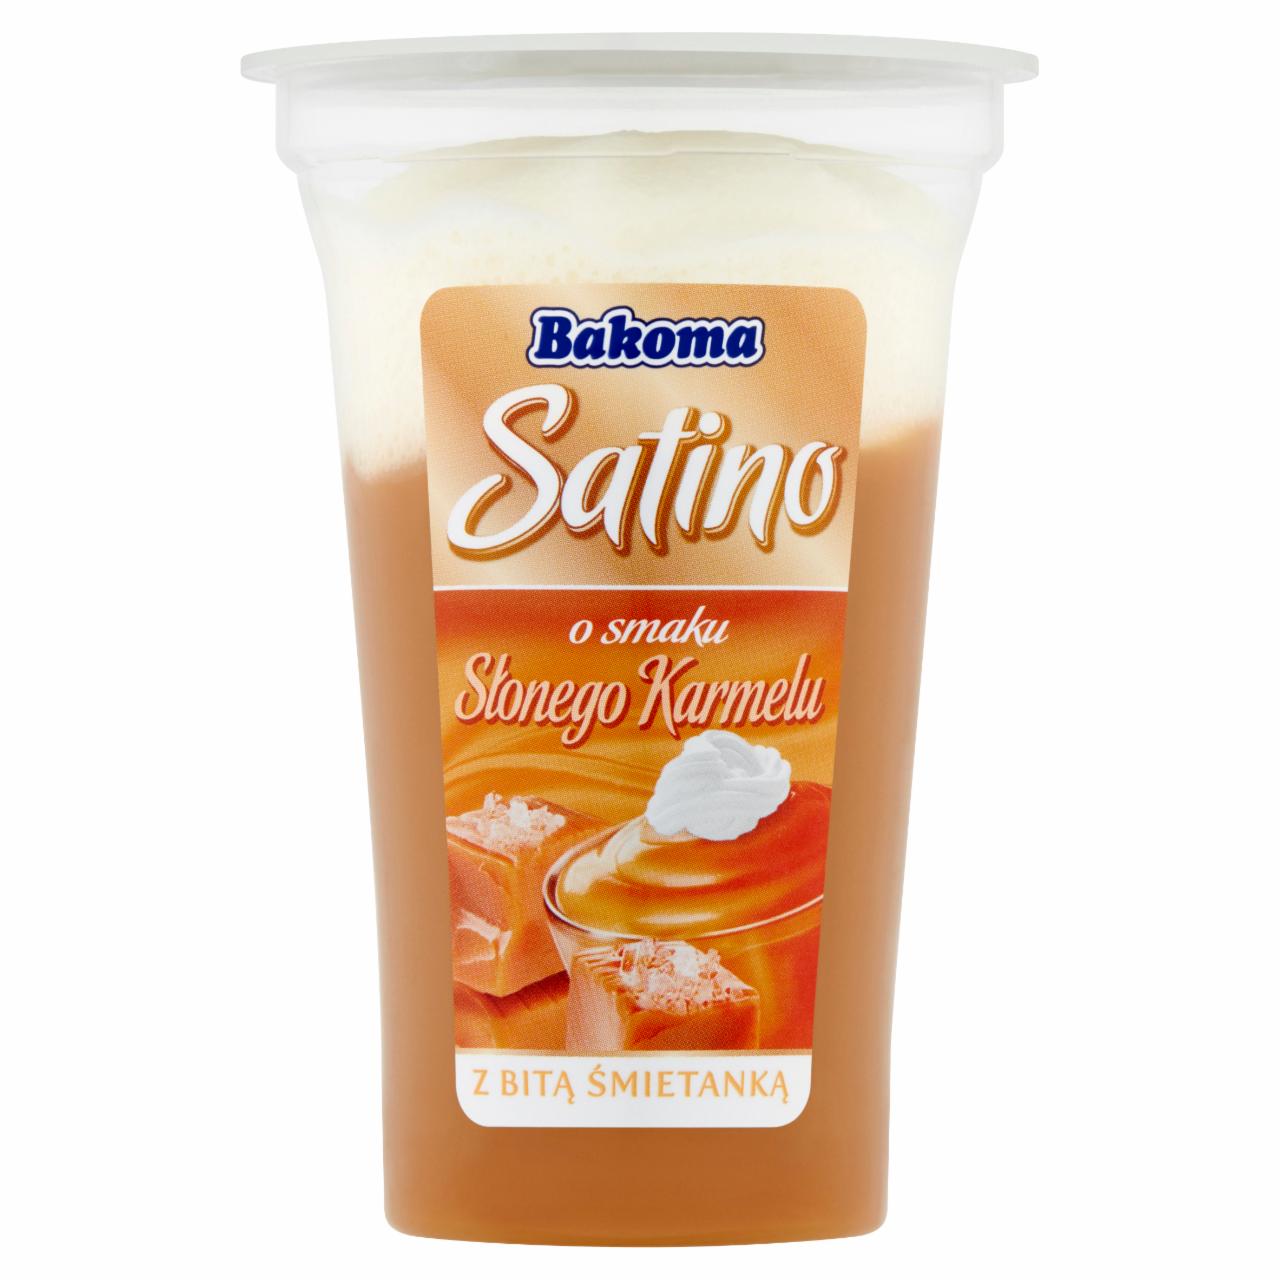 Zdjęcia - Bakoma Satino Deser o smaku słonego karmelu z bitą śmietanką 165 g